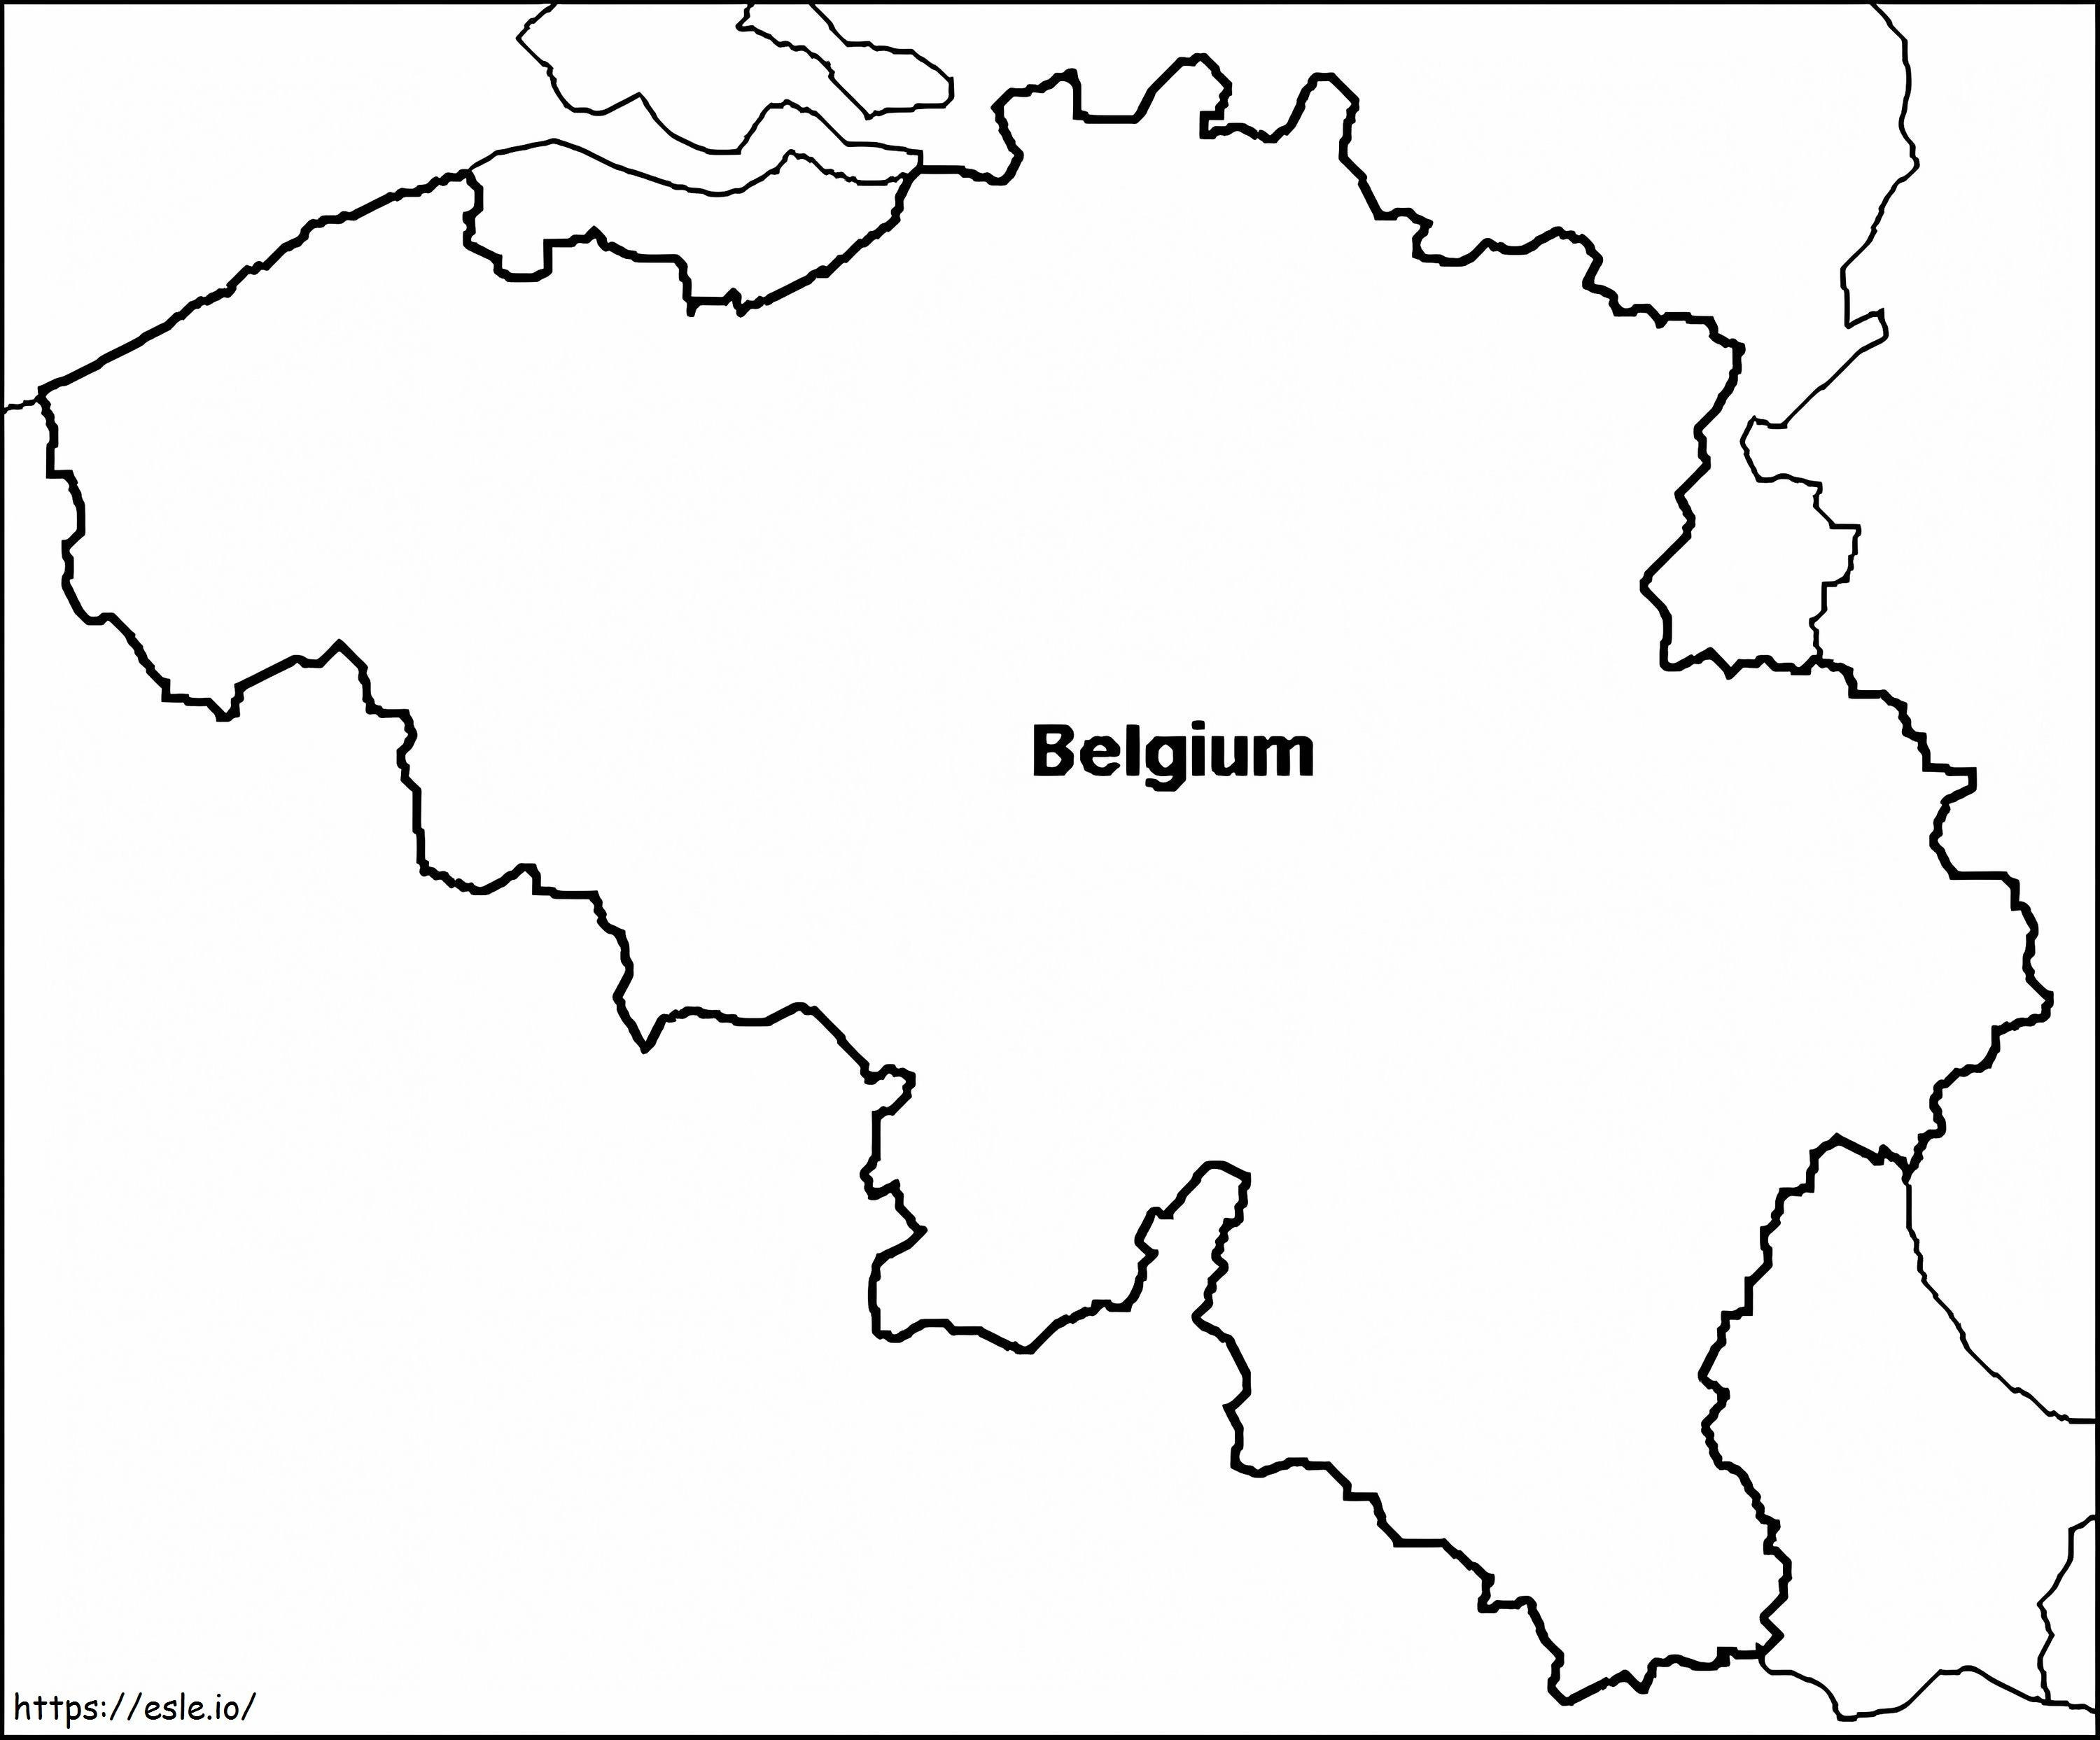 Zarys mapy Belgii kolorowanka